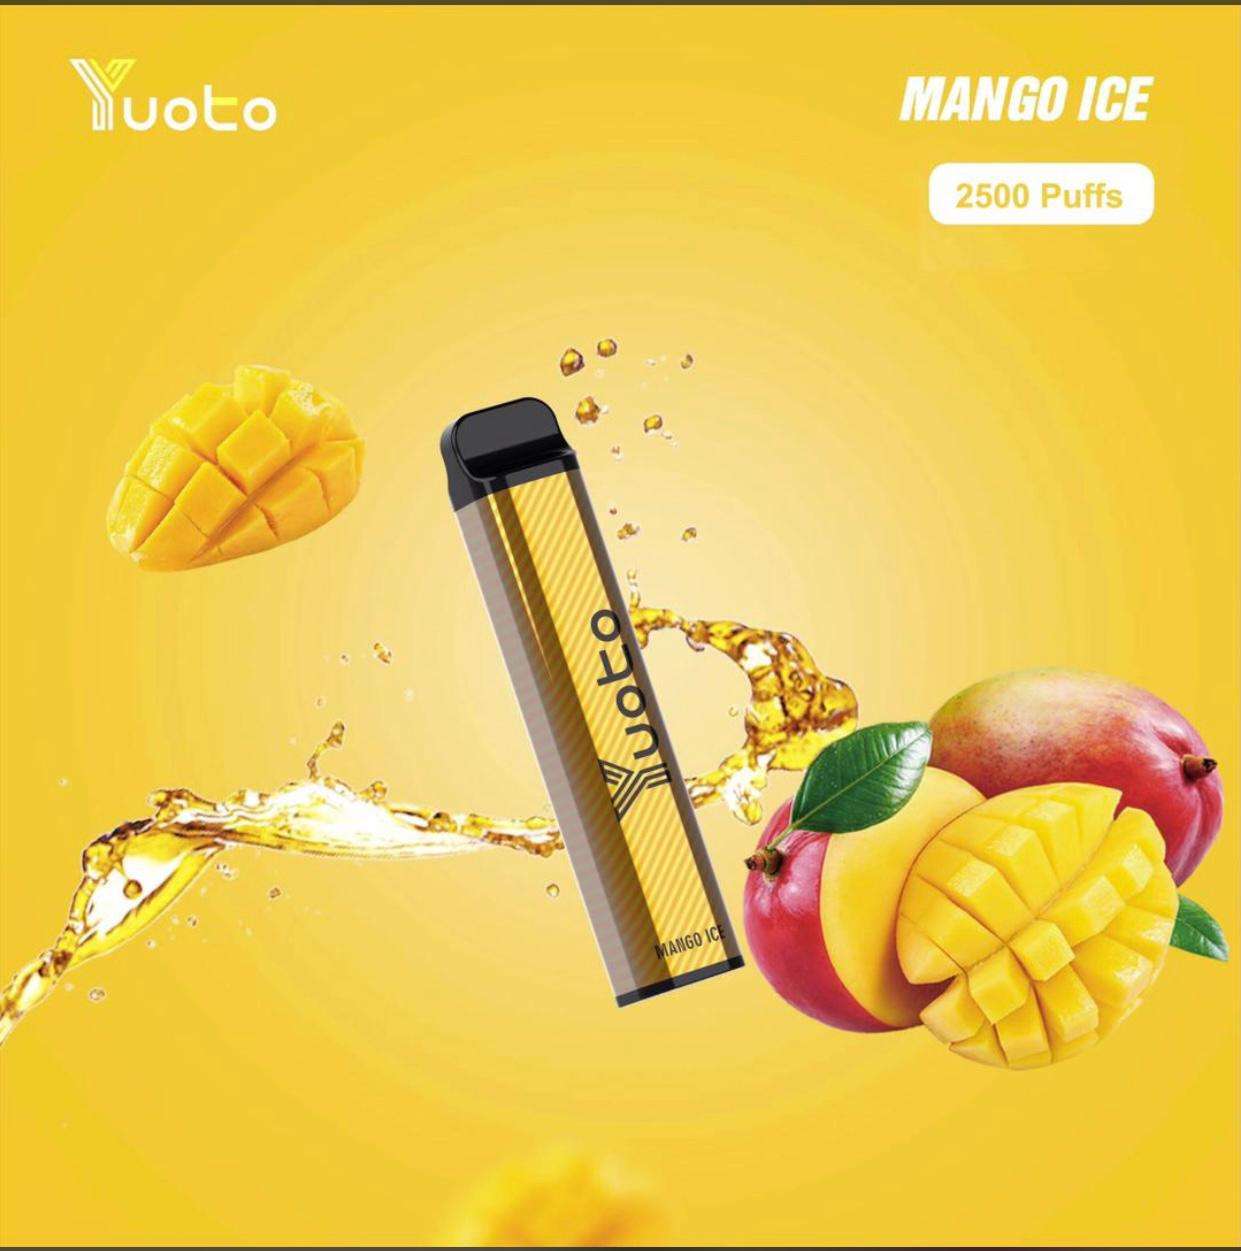 Yuoto xxl disposable mango ice 2500 puffs